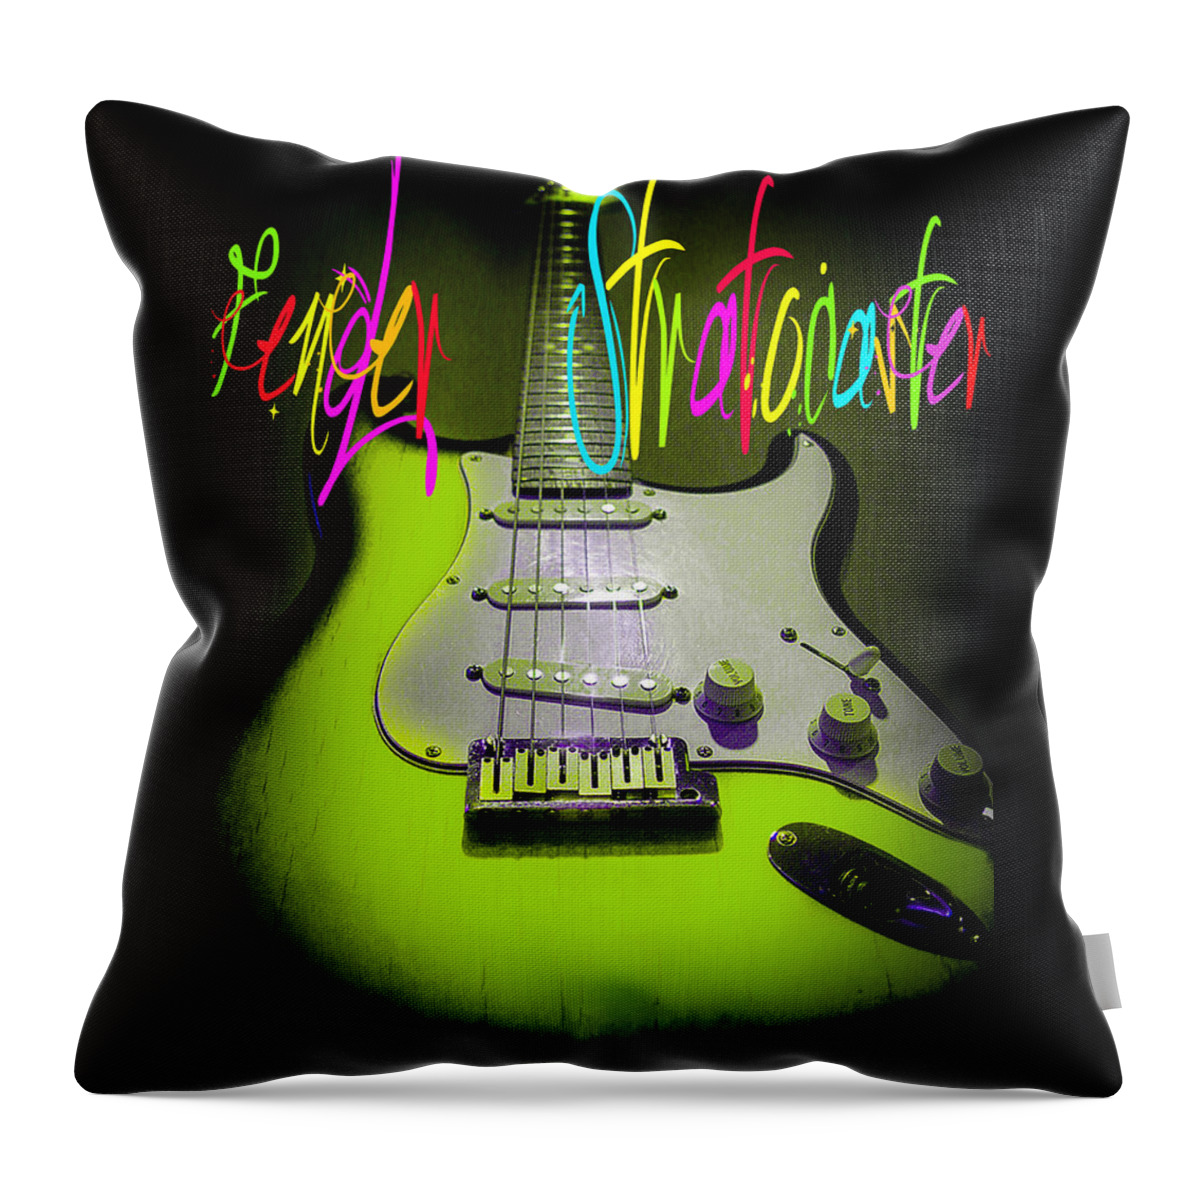 Guitar Throw Pillow featuring the digital art Green Stratocaster Guitar by Guitarwacky Fine Art